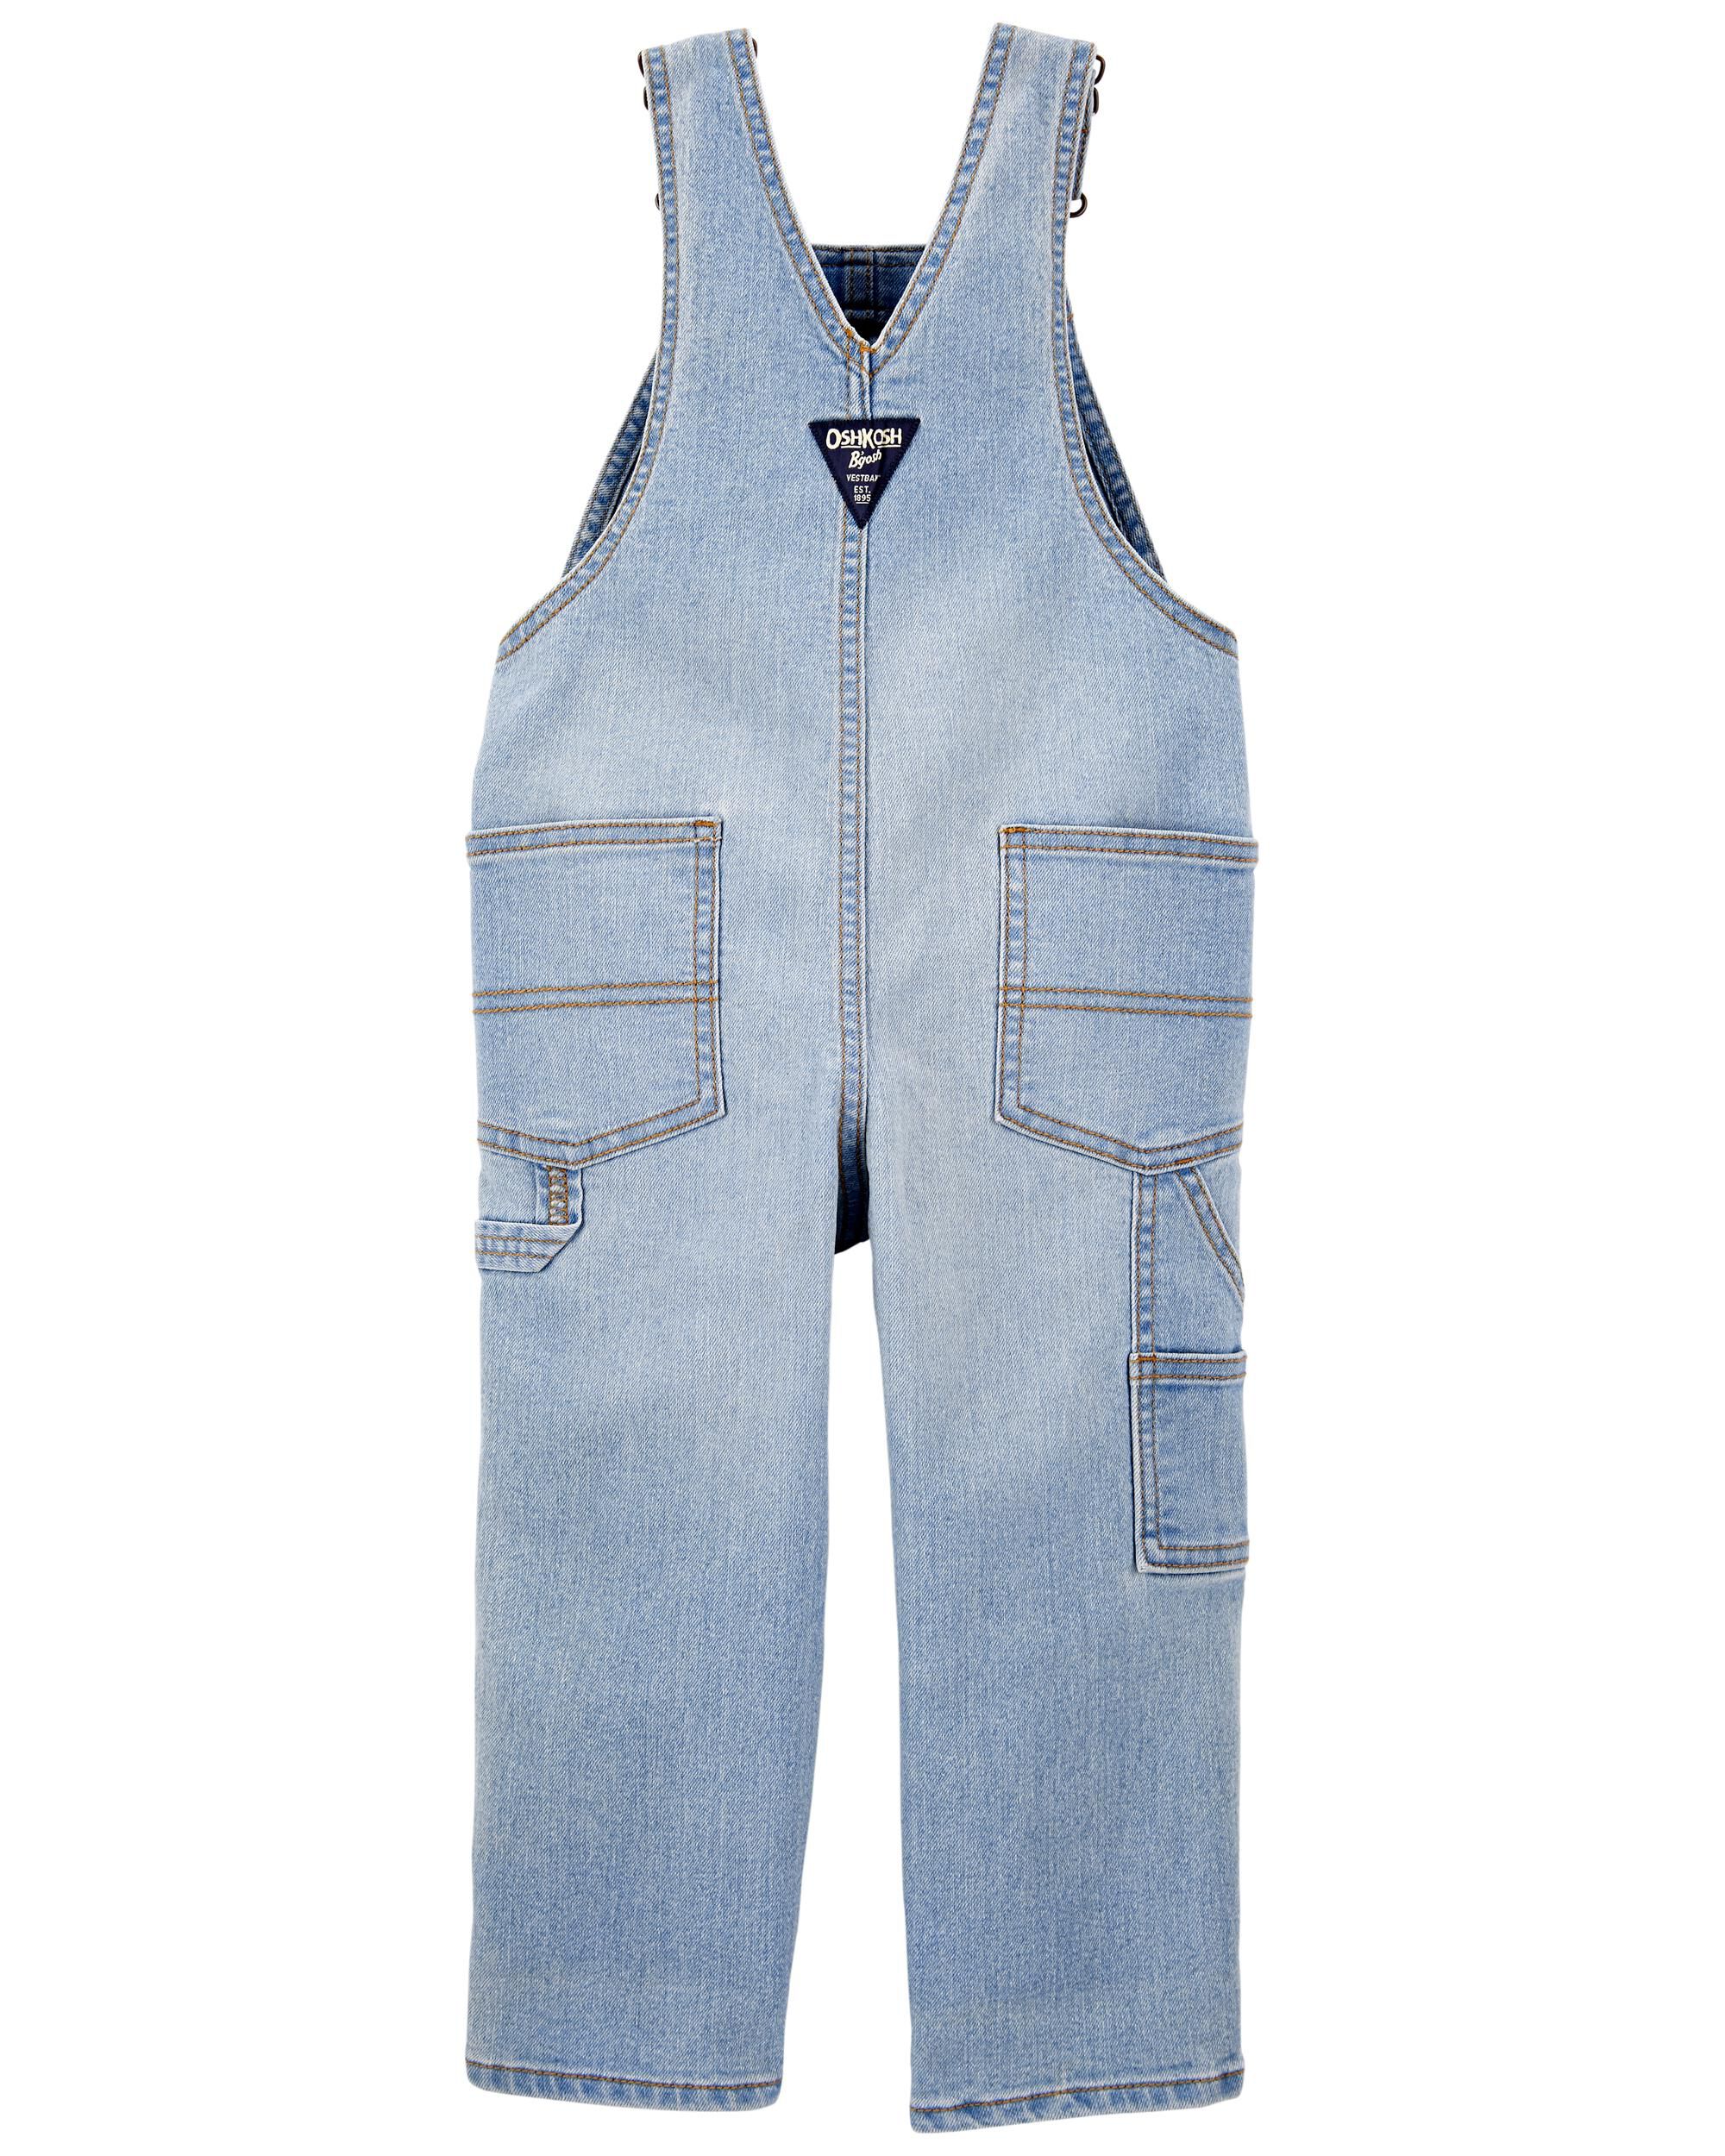 Blue Size 3-24 Months Ivory Oshkosh Bgosh Baby Boys Hickory Striped Soft Denim Knit Shortalls with Adjustable Straps